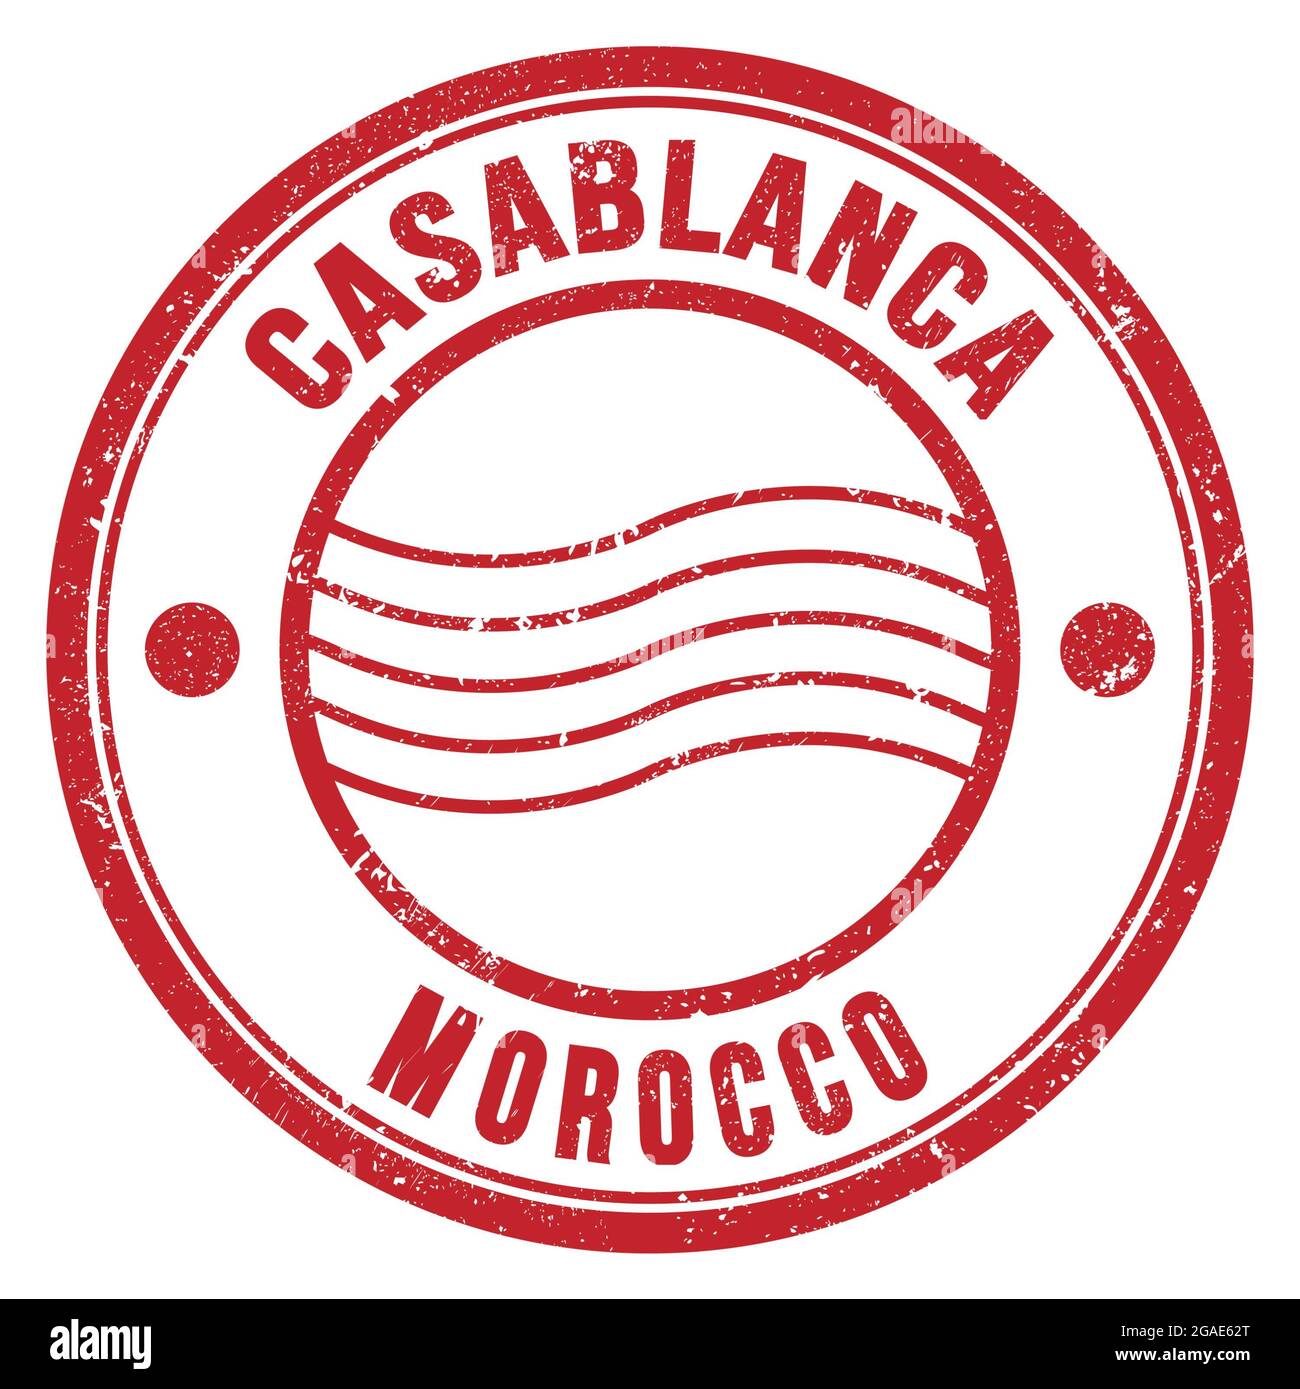 CASABLANCA - MAROC, mots écrits sur timbre postal rond rouge Banque D'Images